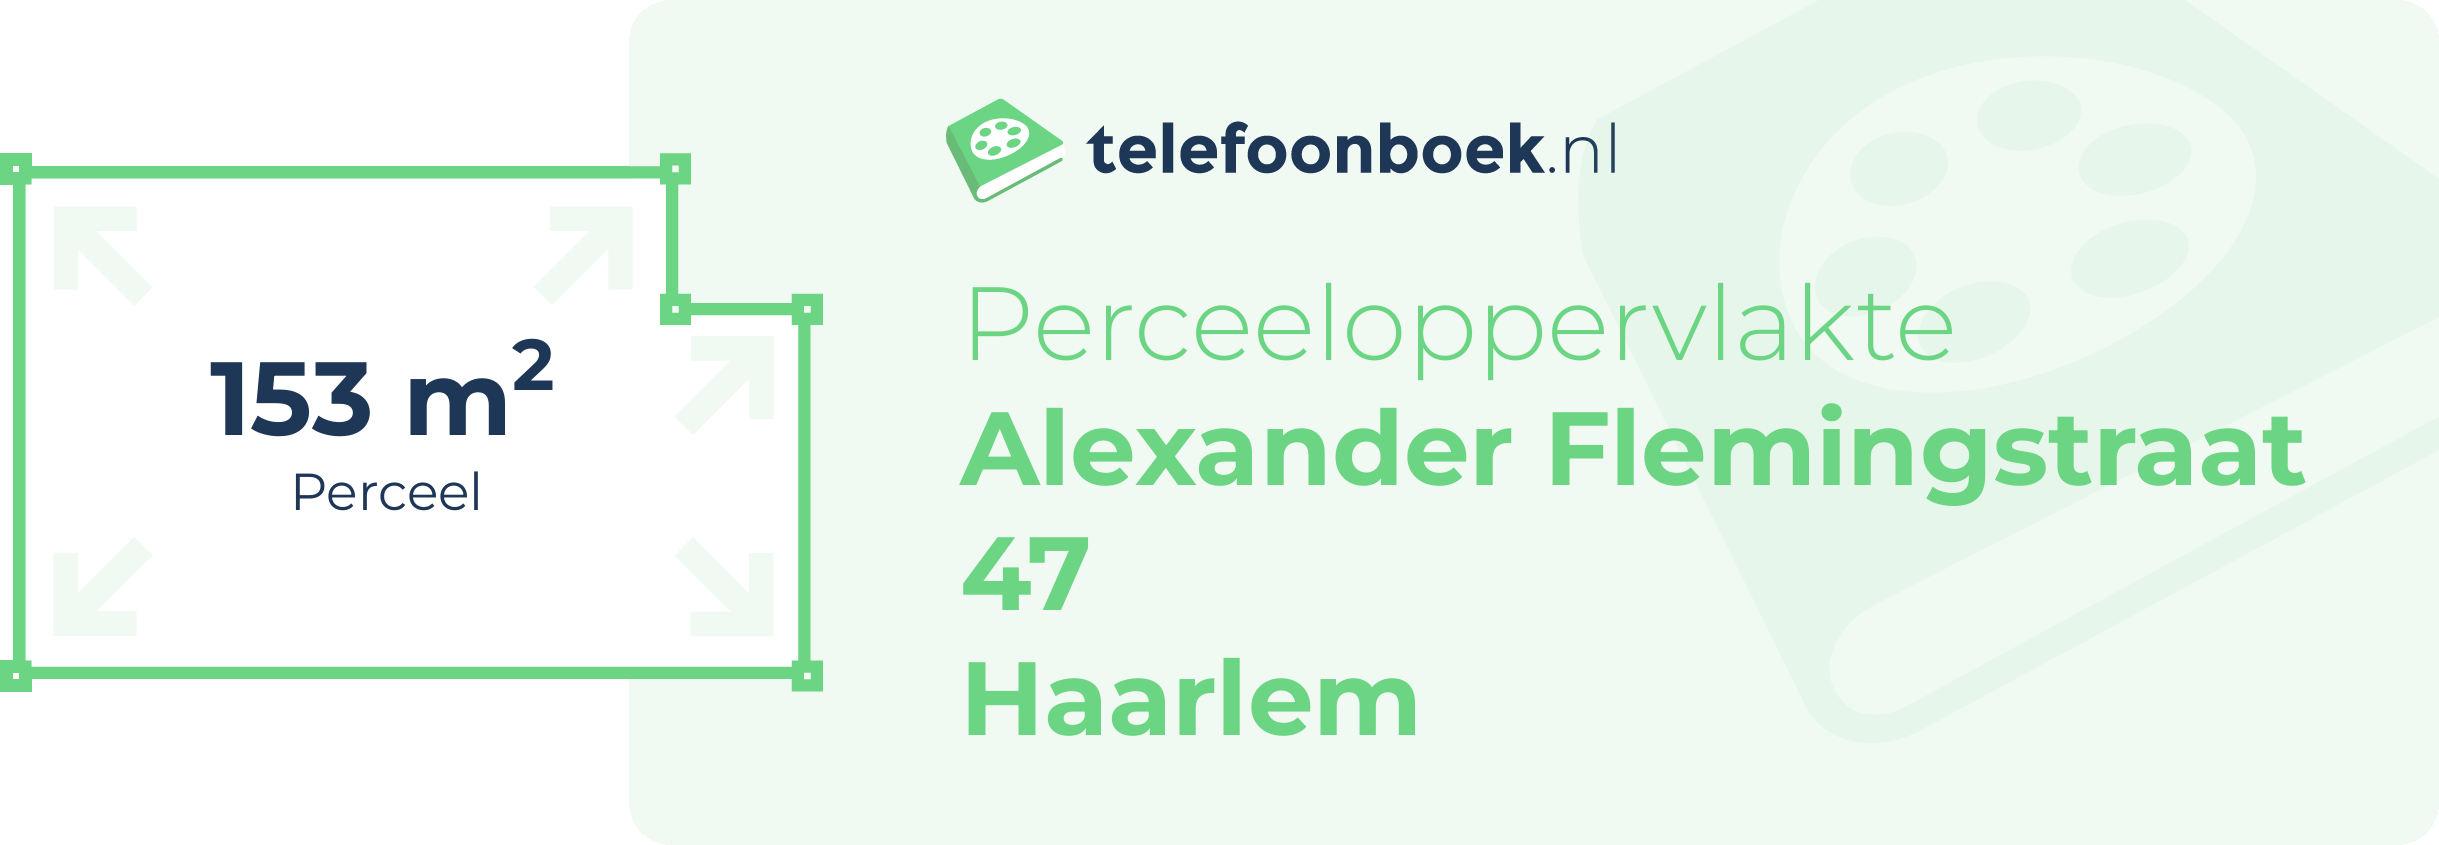 Perceeloppervlakte Alexander Flemingstraat 47 Haarlem